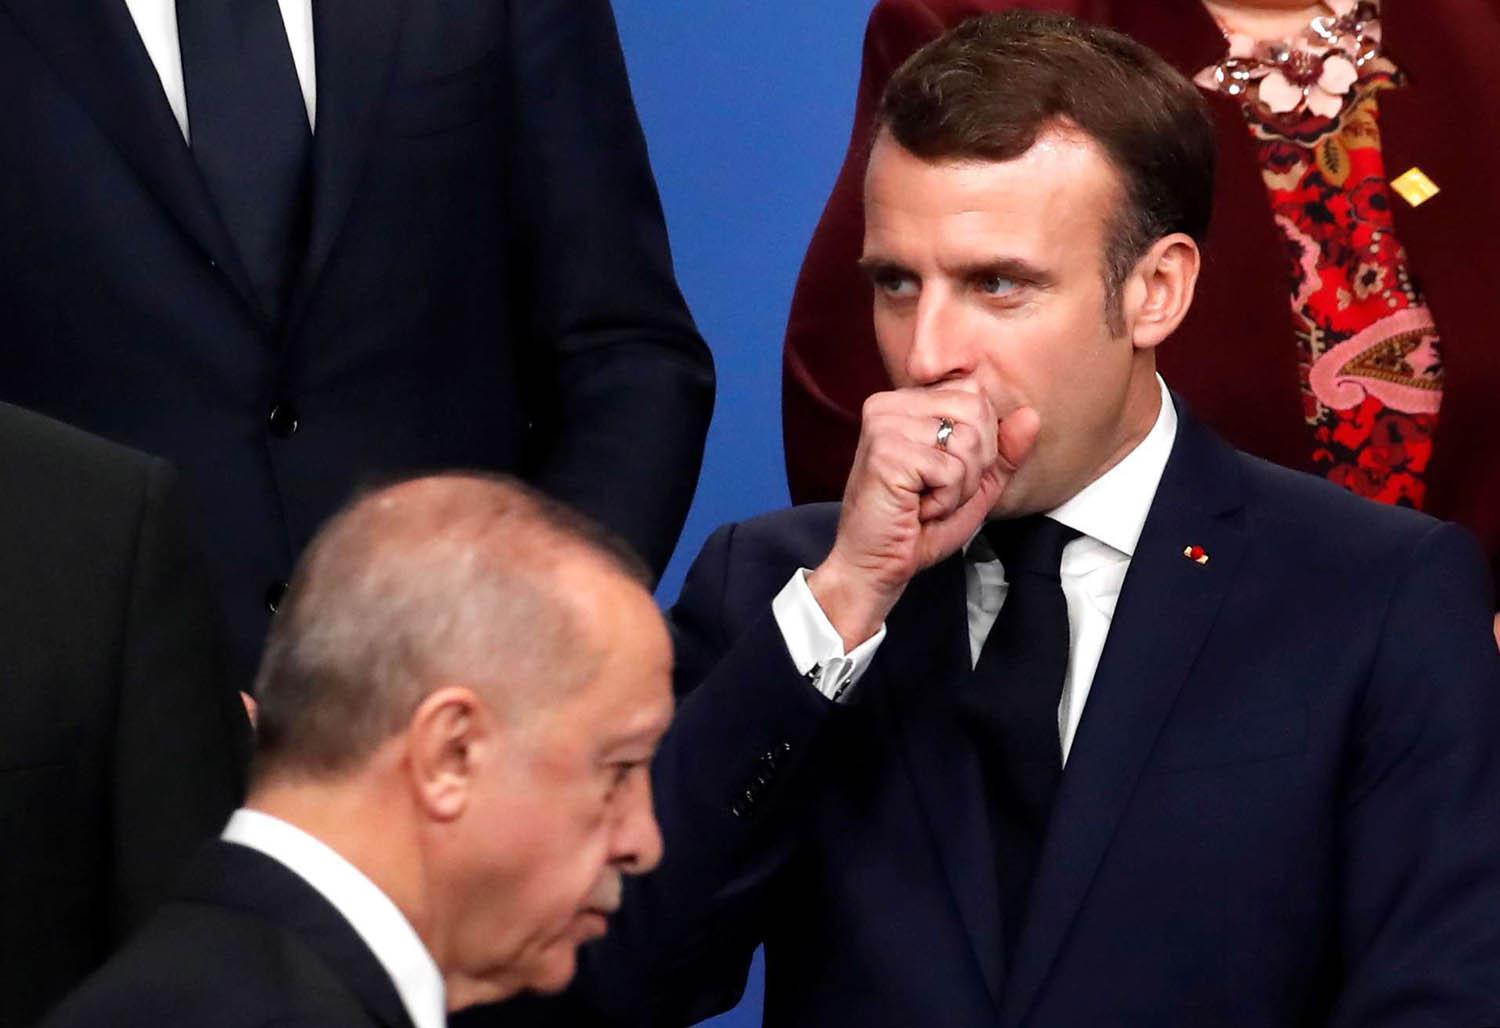 الرئيس الفرنسي ايمانويل ماكرون والرئيس التركي رجب طيب أردوغان في اجتماع الناتو (2019)